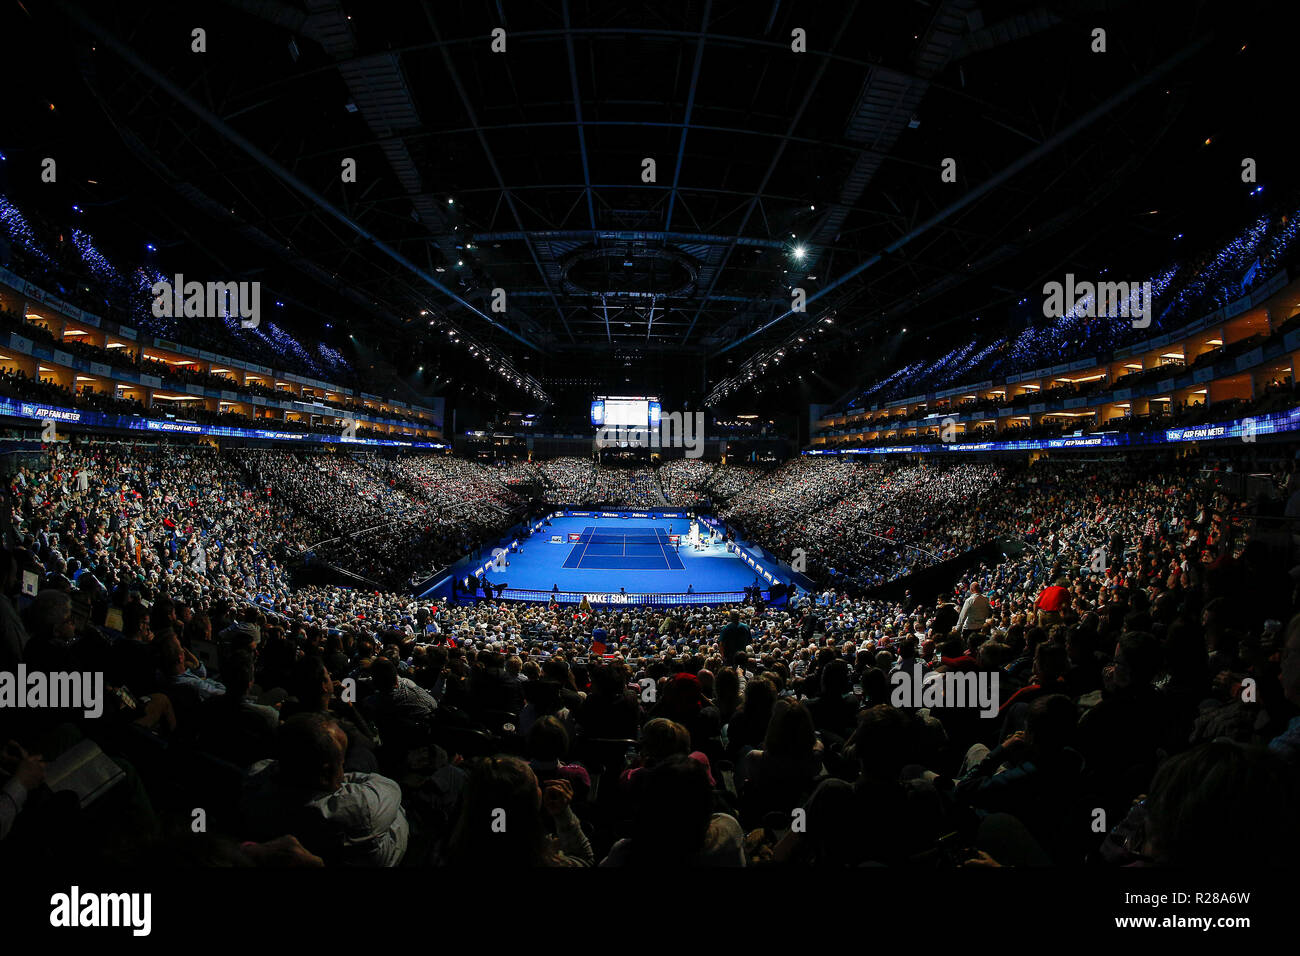 17 novembre 2018, O2 Arena, London, England ; Nitto ATP Tennis finale ; Fans regarder le match de demi-finale entre Alexander Zverev (GER) et Roger Federer (SUI) Banque D'Images